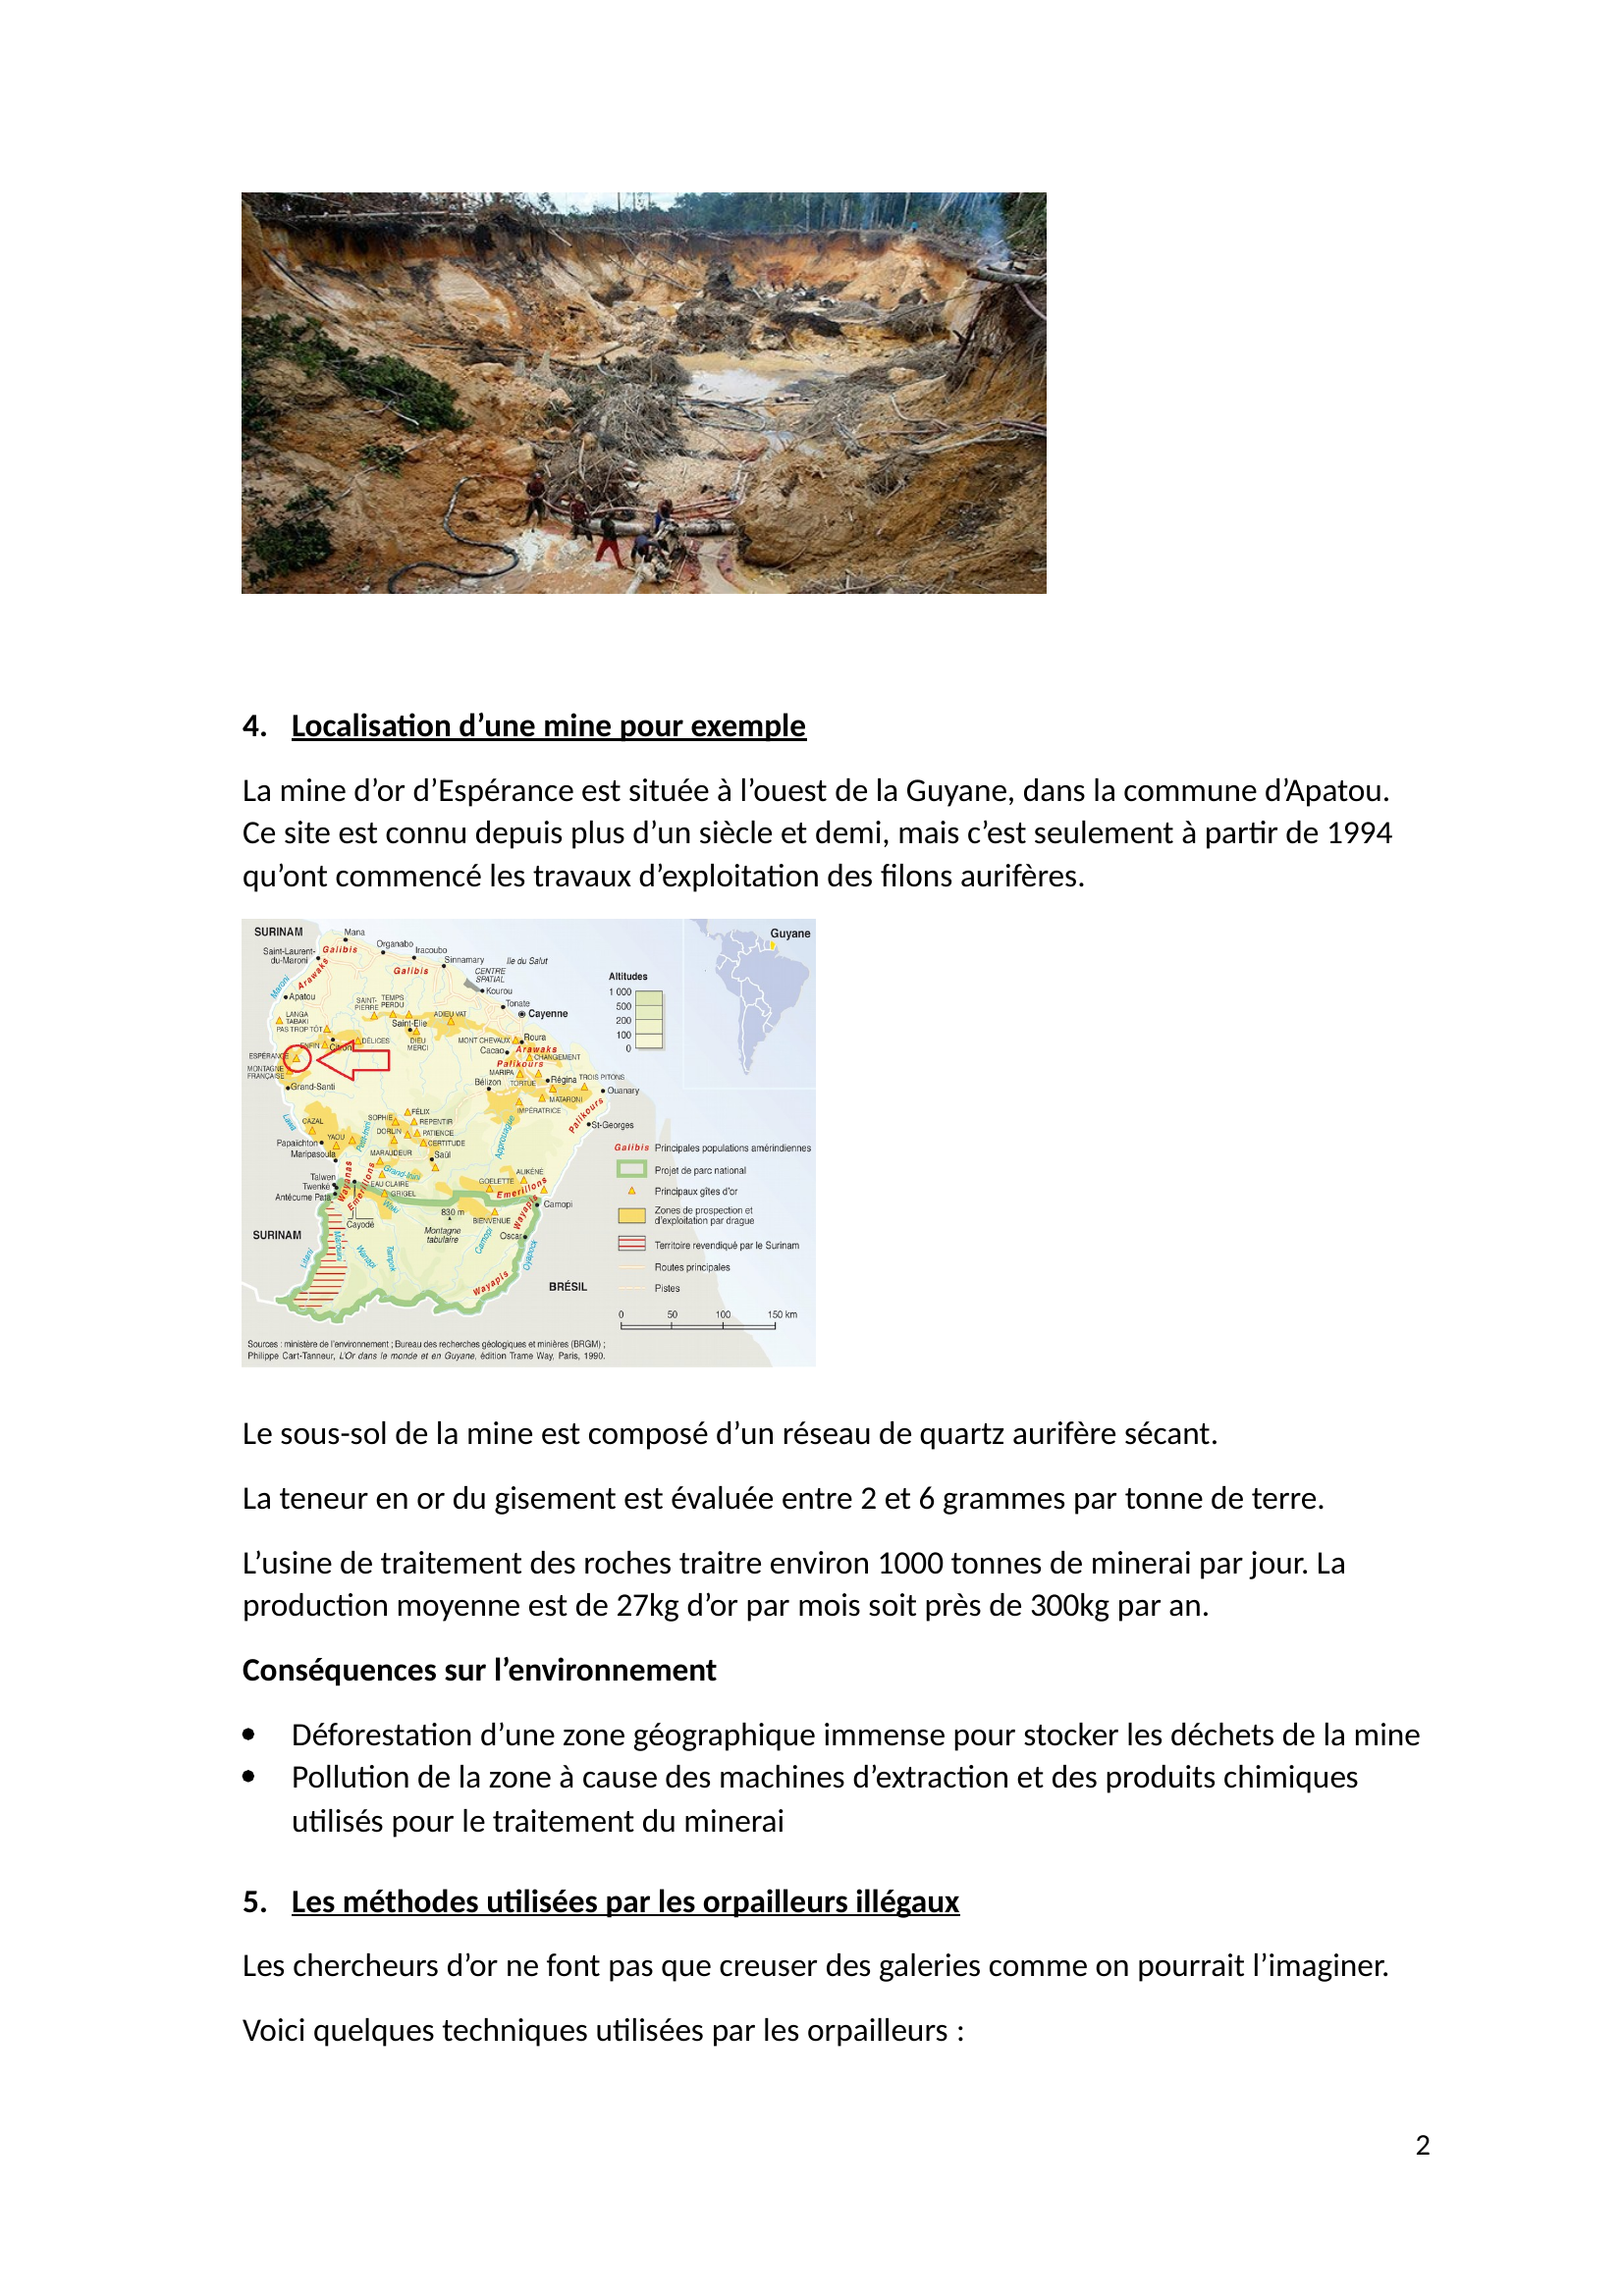 Prévisualisation du document Introduction 

 
La forêt guyanaise est déforestée chaque jour par des chercheurs d’or illégaux pour dévier des cours d’eau et pour construire des nouvelles mines.